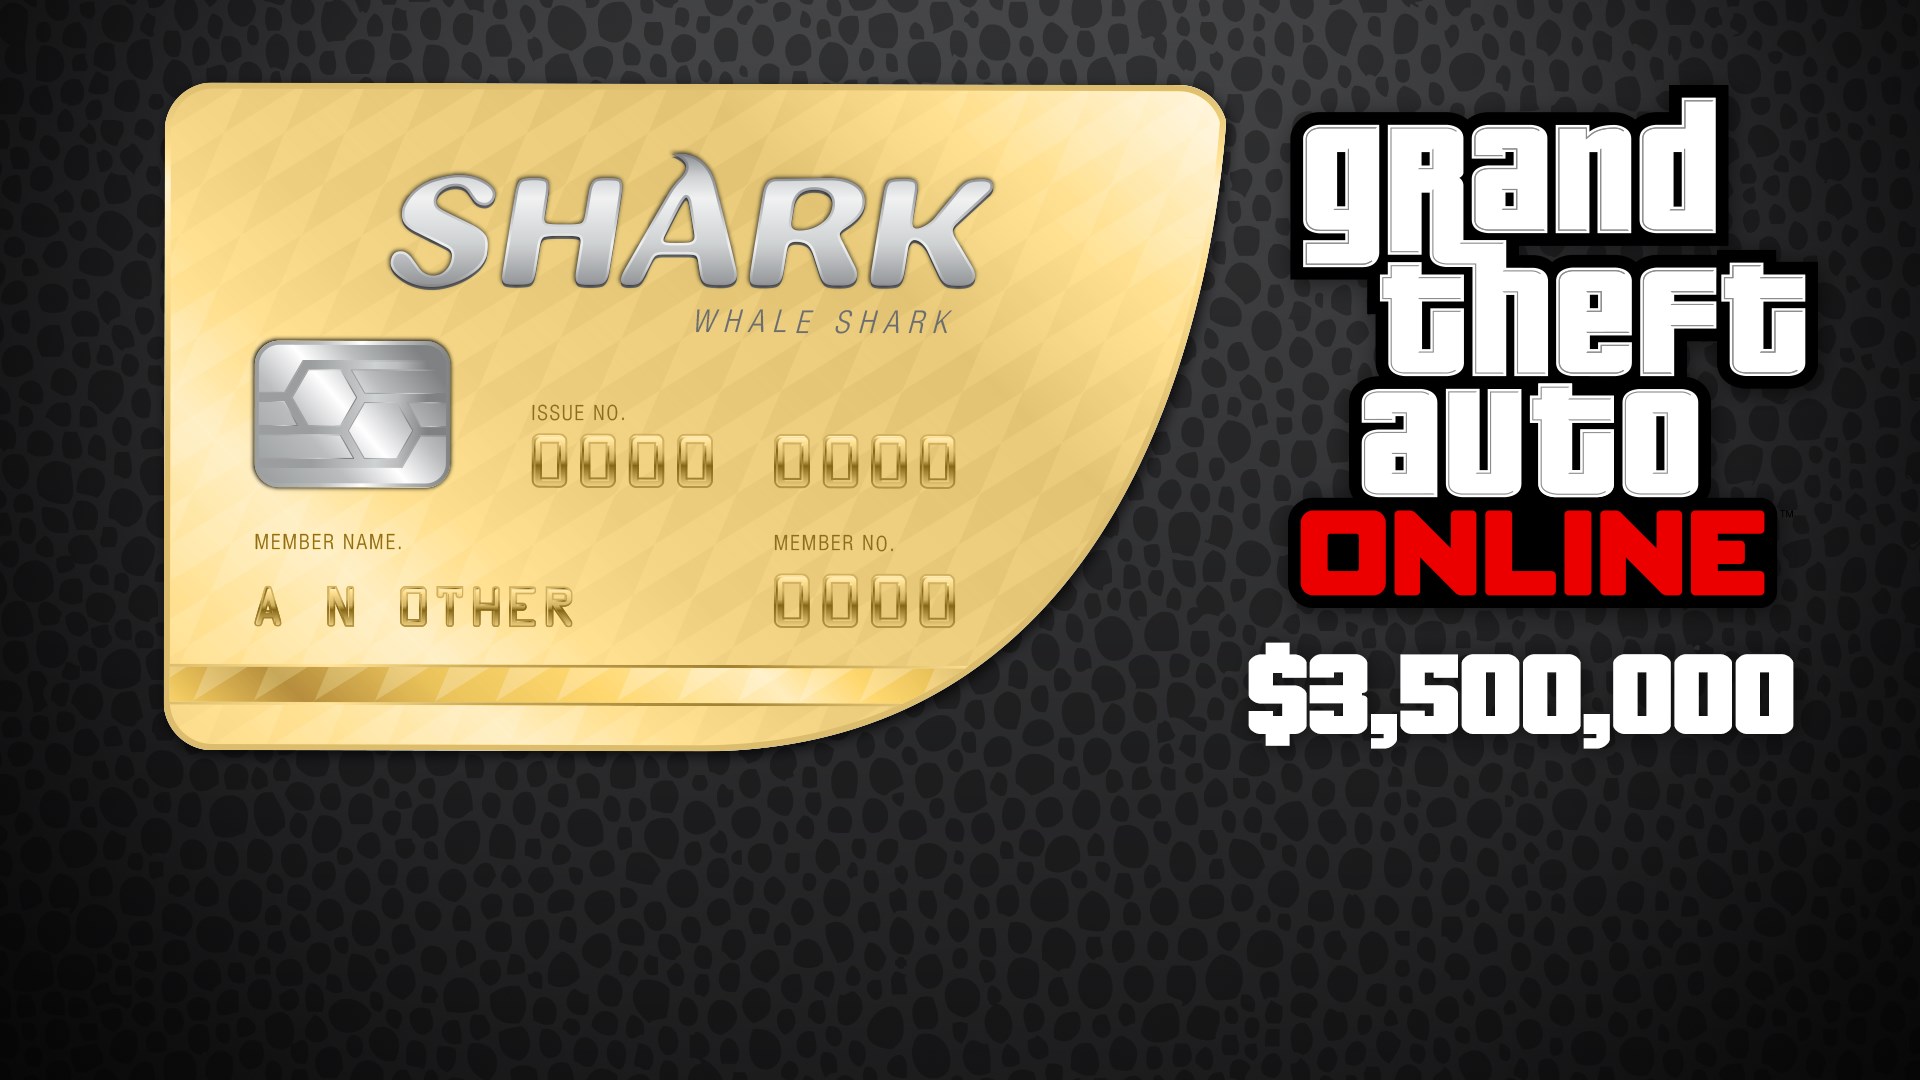 Kup Karta Gotowkowa Whale Shark Sklep Microsoft Store Pl Pl - kup 10 000 robuxow na xboxa sklep microsoft store pl pl